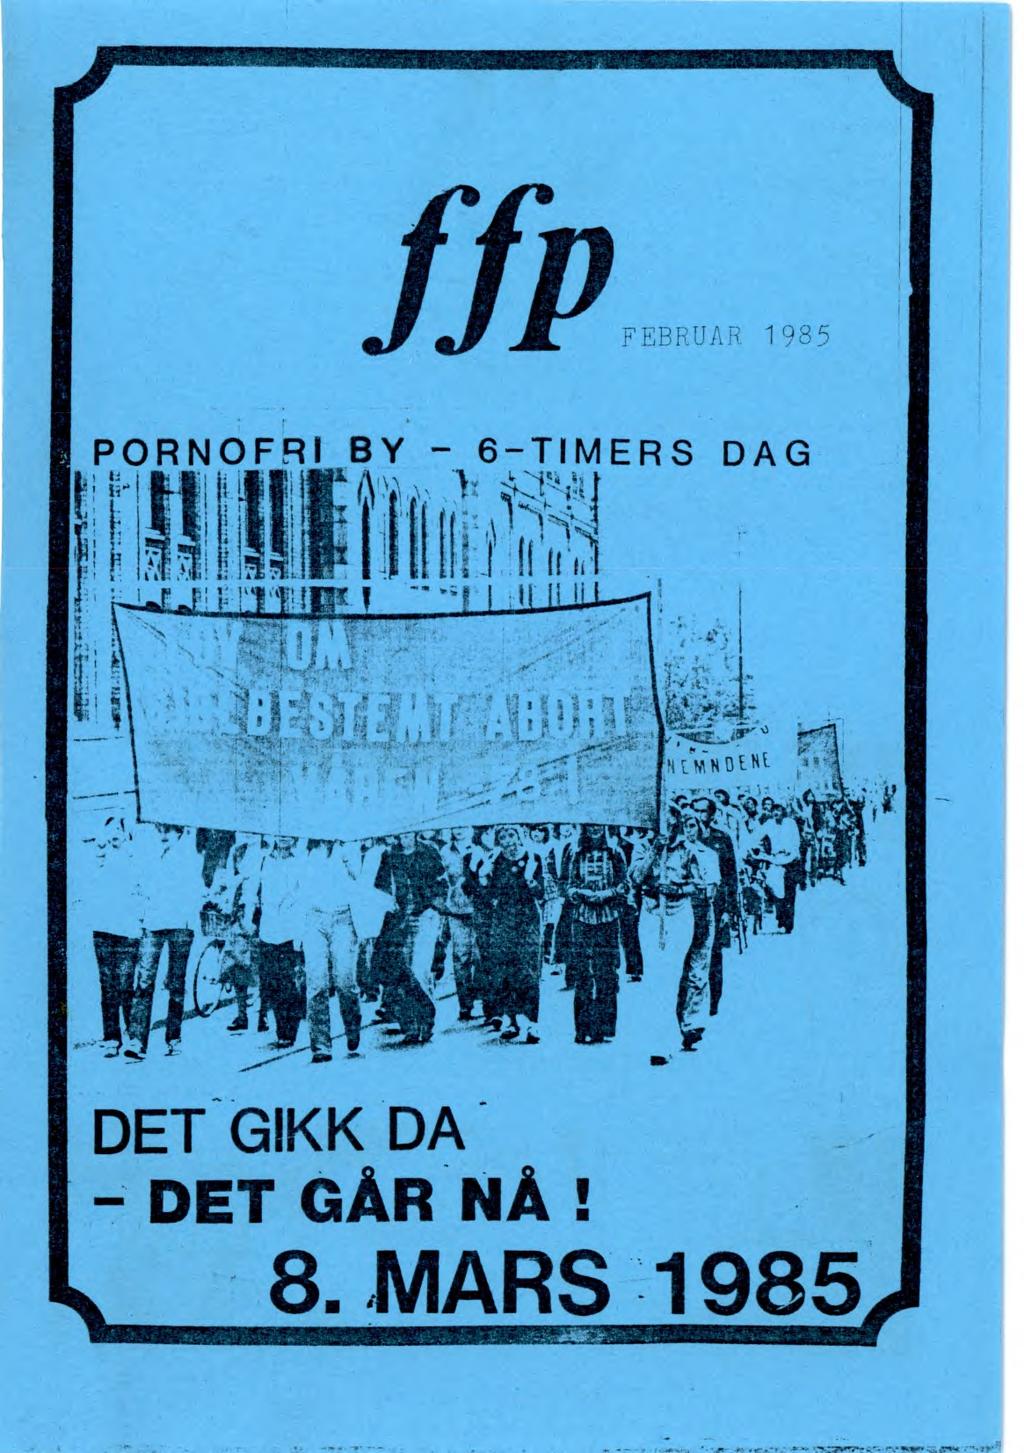 -. ' ffp FEBRUAR 1985 PORNOFRI BY - 6 - TIMERS